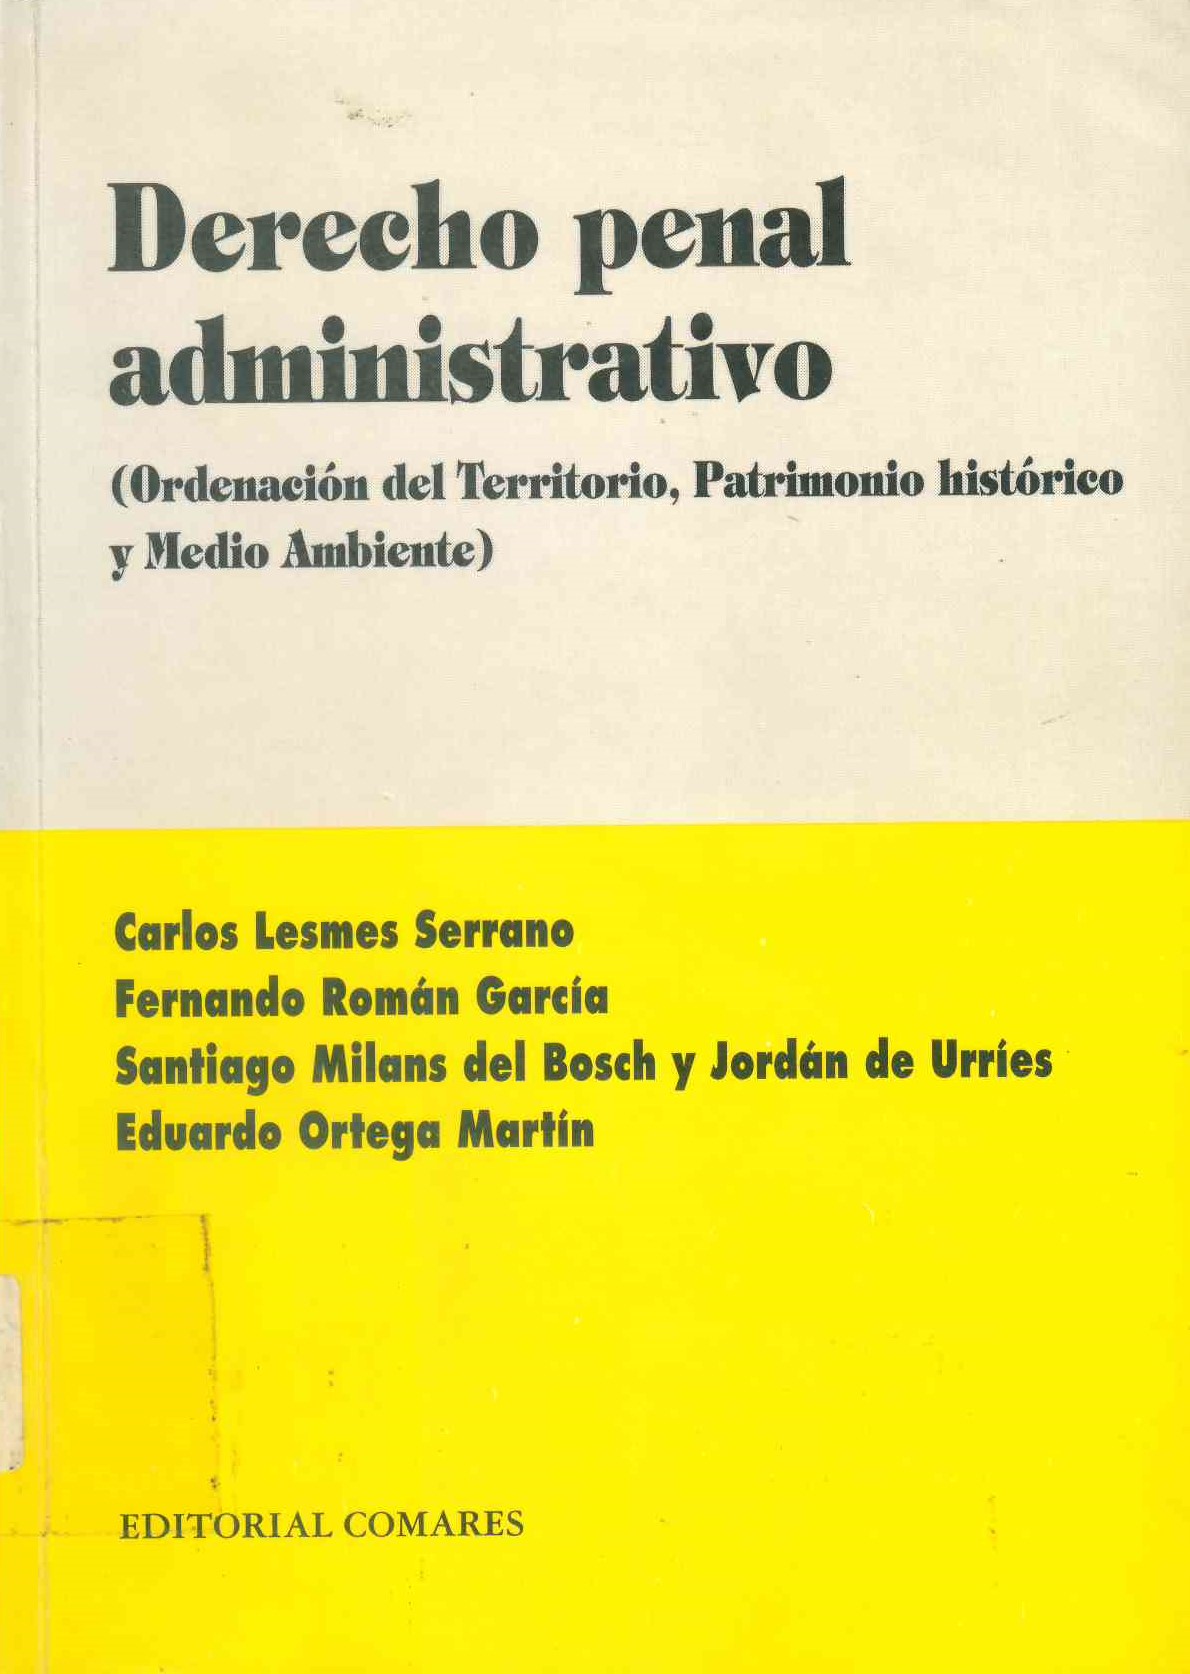 Derecho penal administrativo : ordenación del territorio, patrimonio historico y medio ambiente